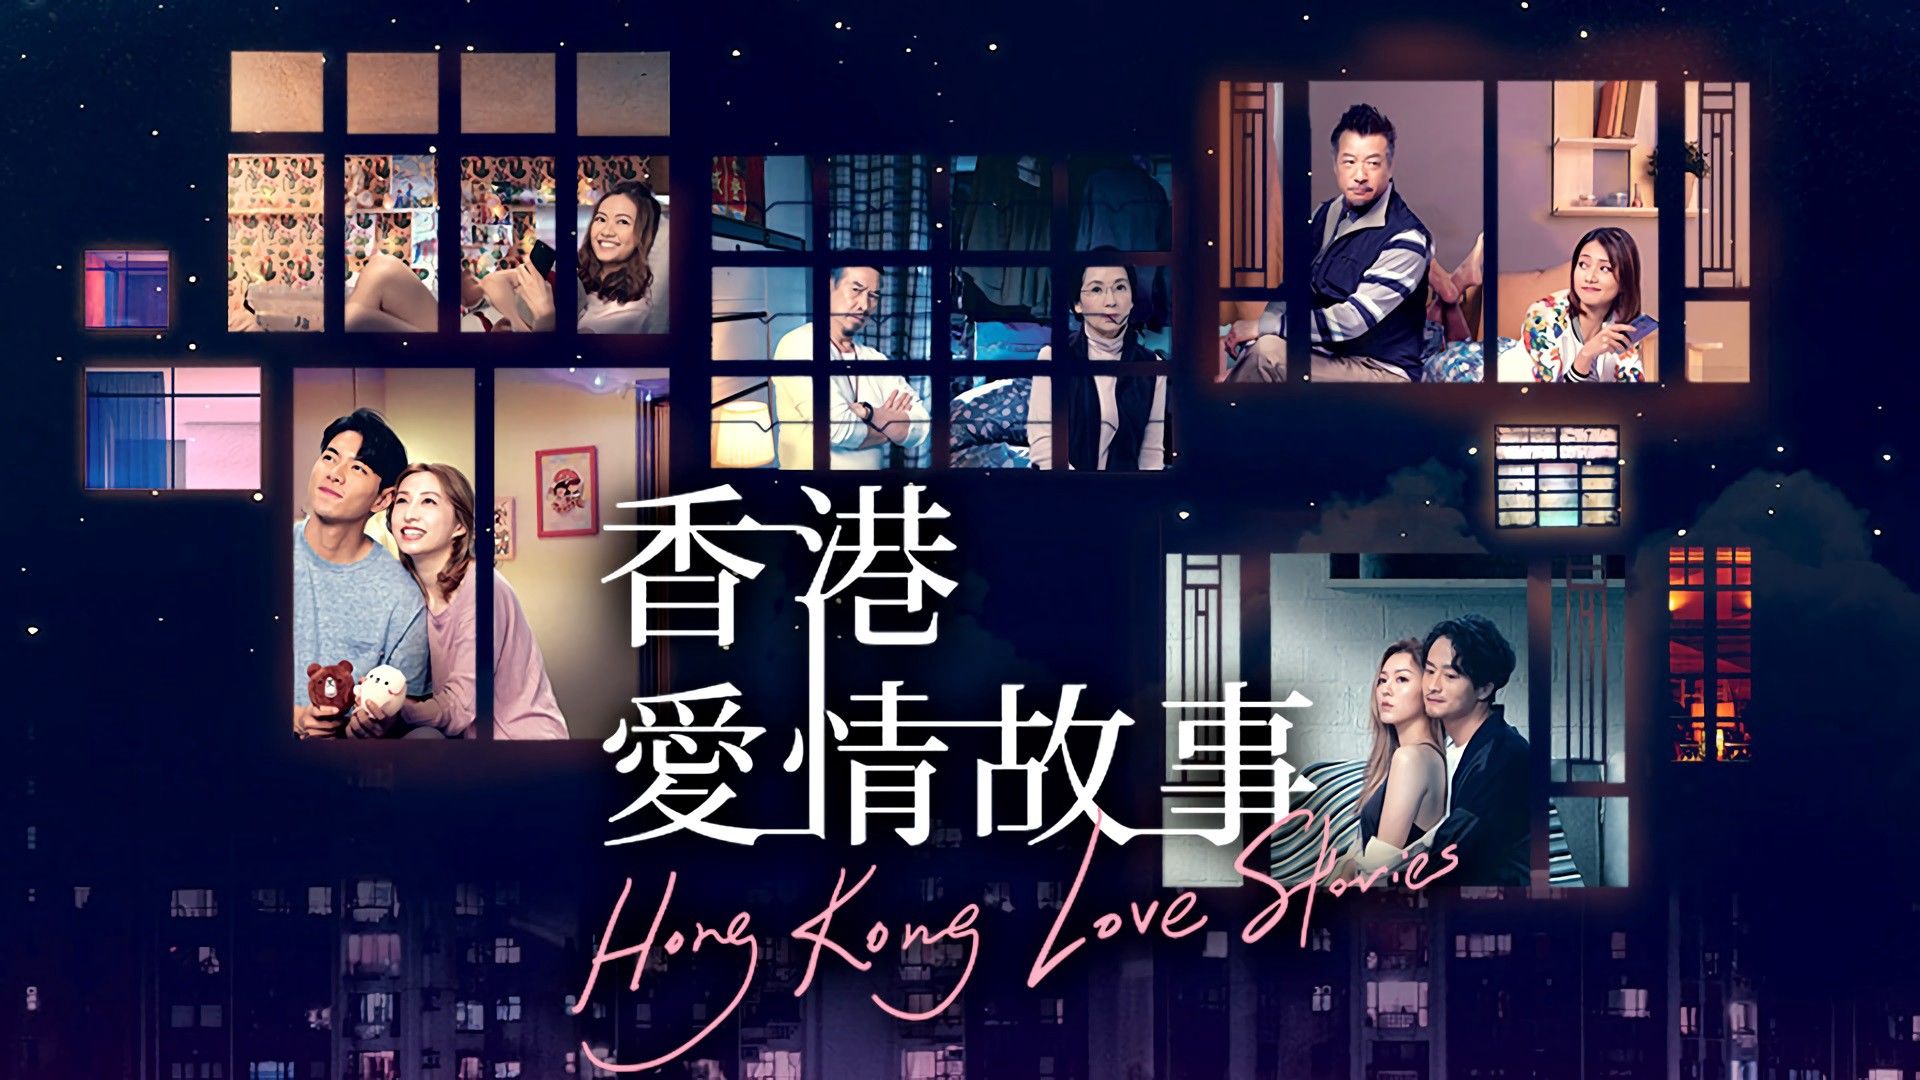 phim hong kong tv mới nhất - chuyện tình hồng kong hay 2021